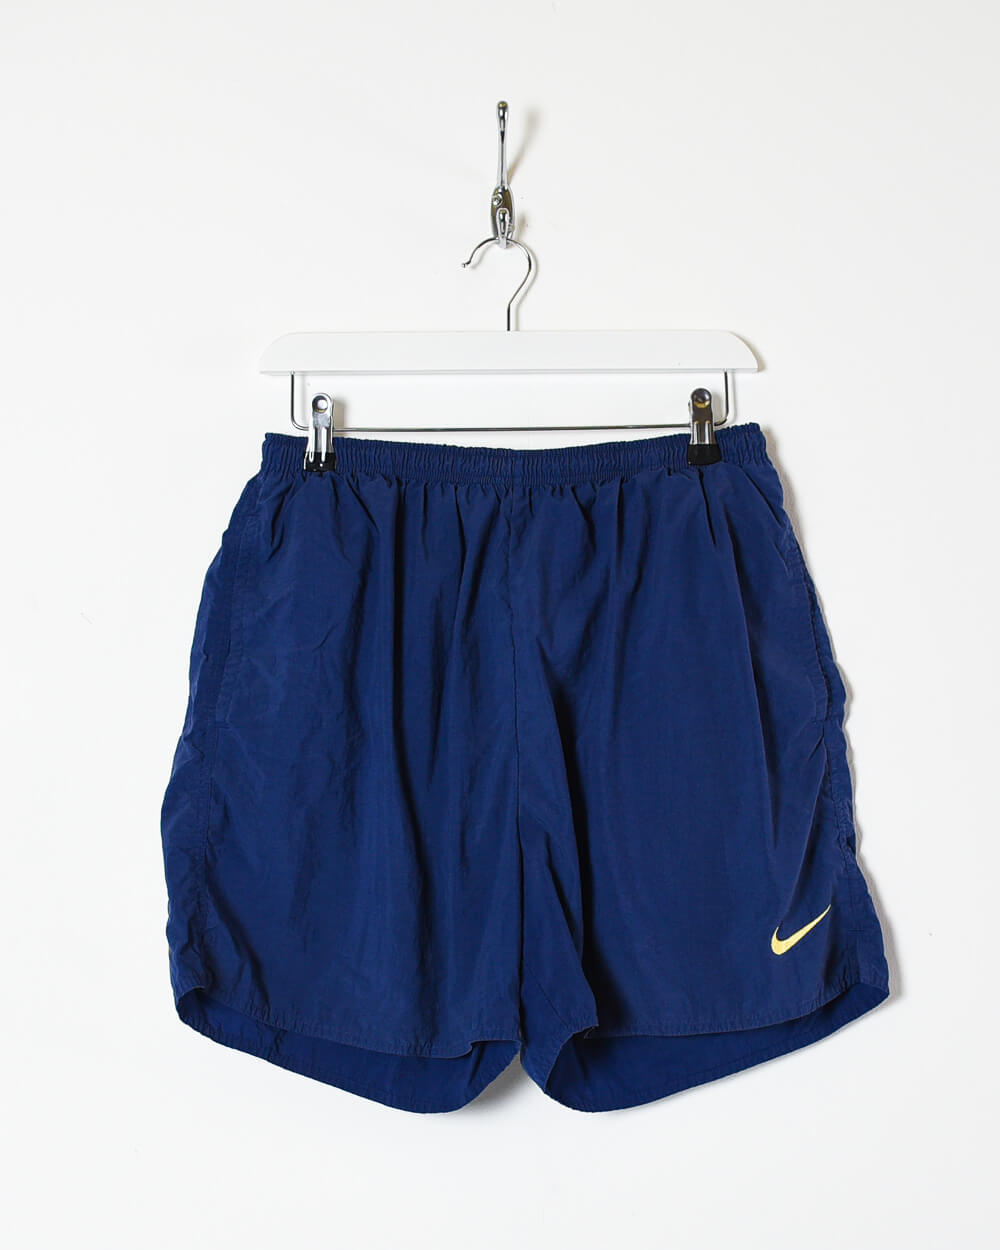 Navy Nike Shorts - W36